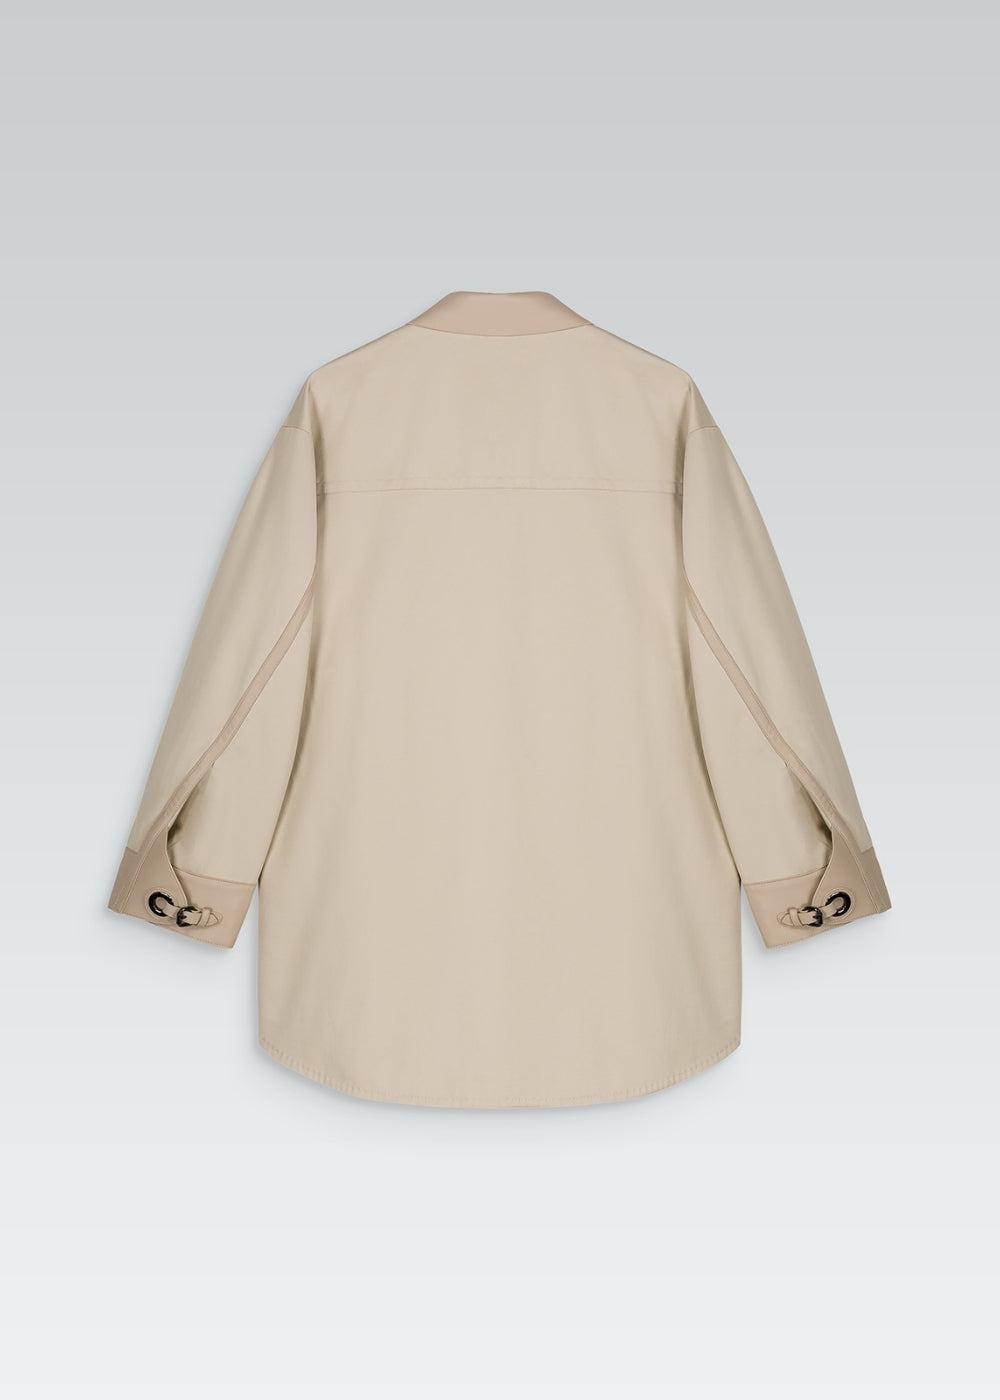 Manteau chemise beige poches à rabat en cuir, boutons recouverts de cuir et détails manches boutons